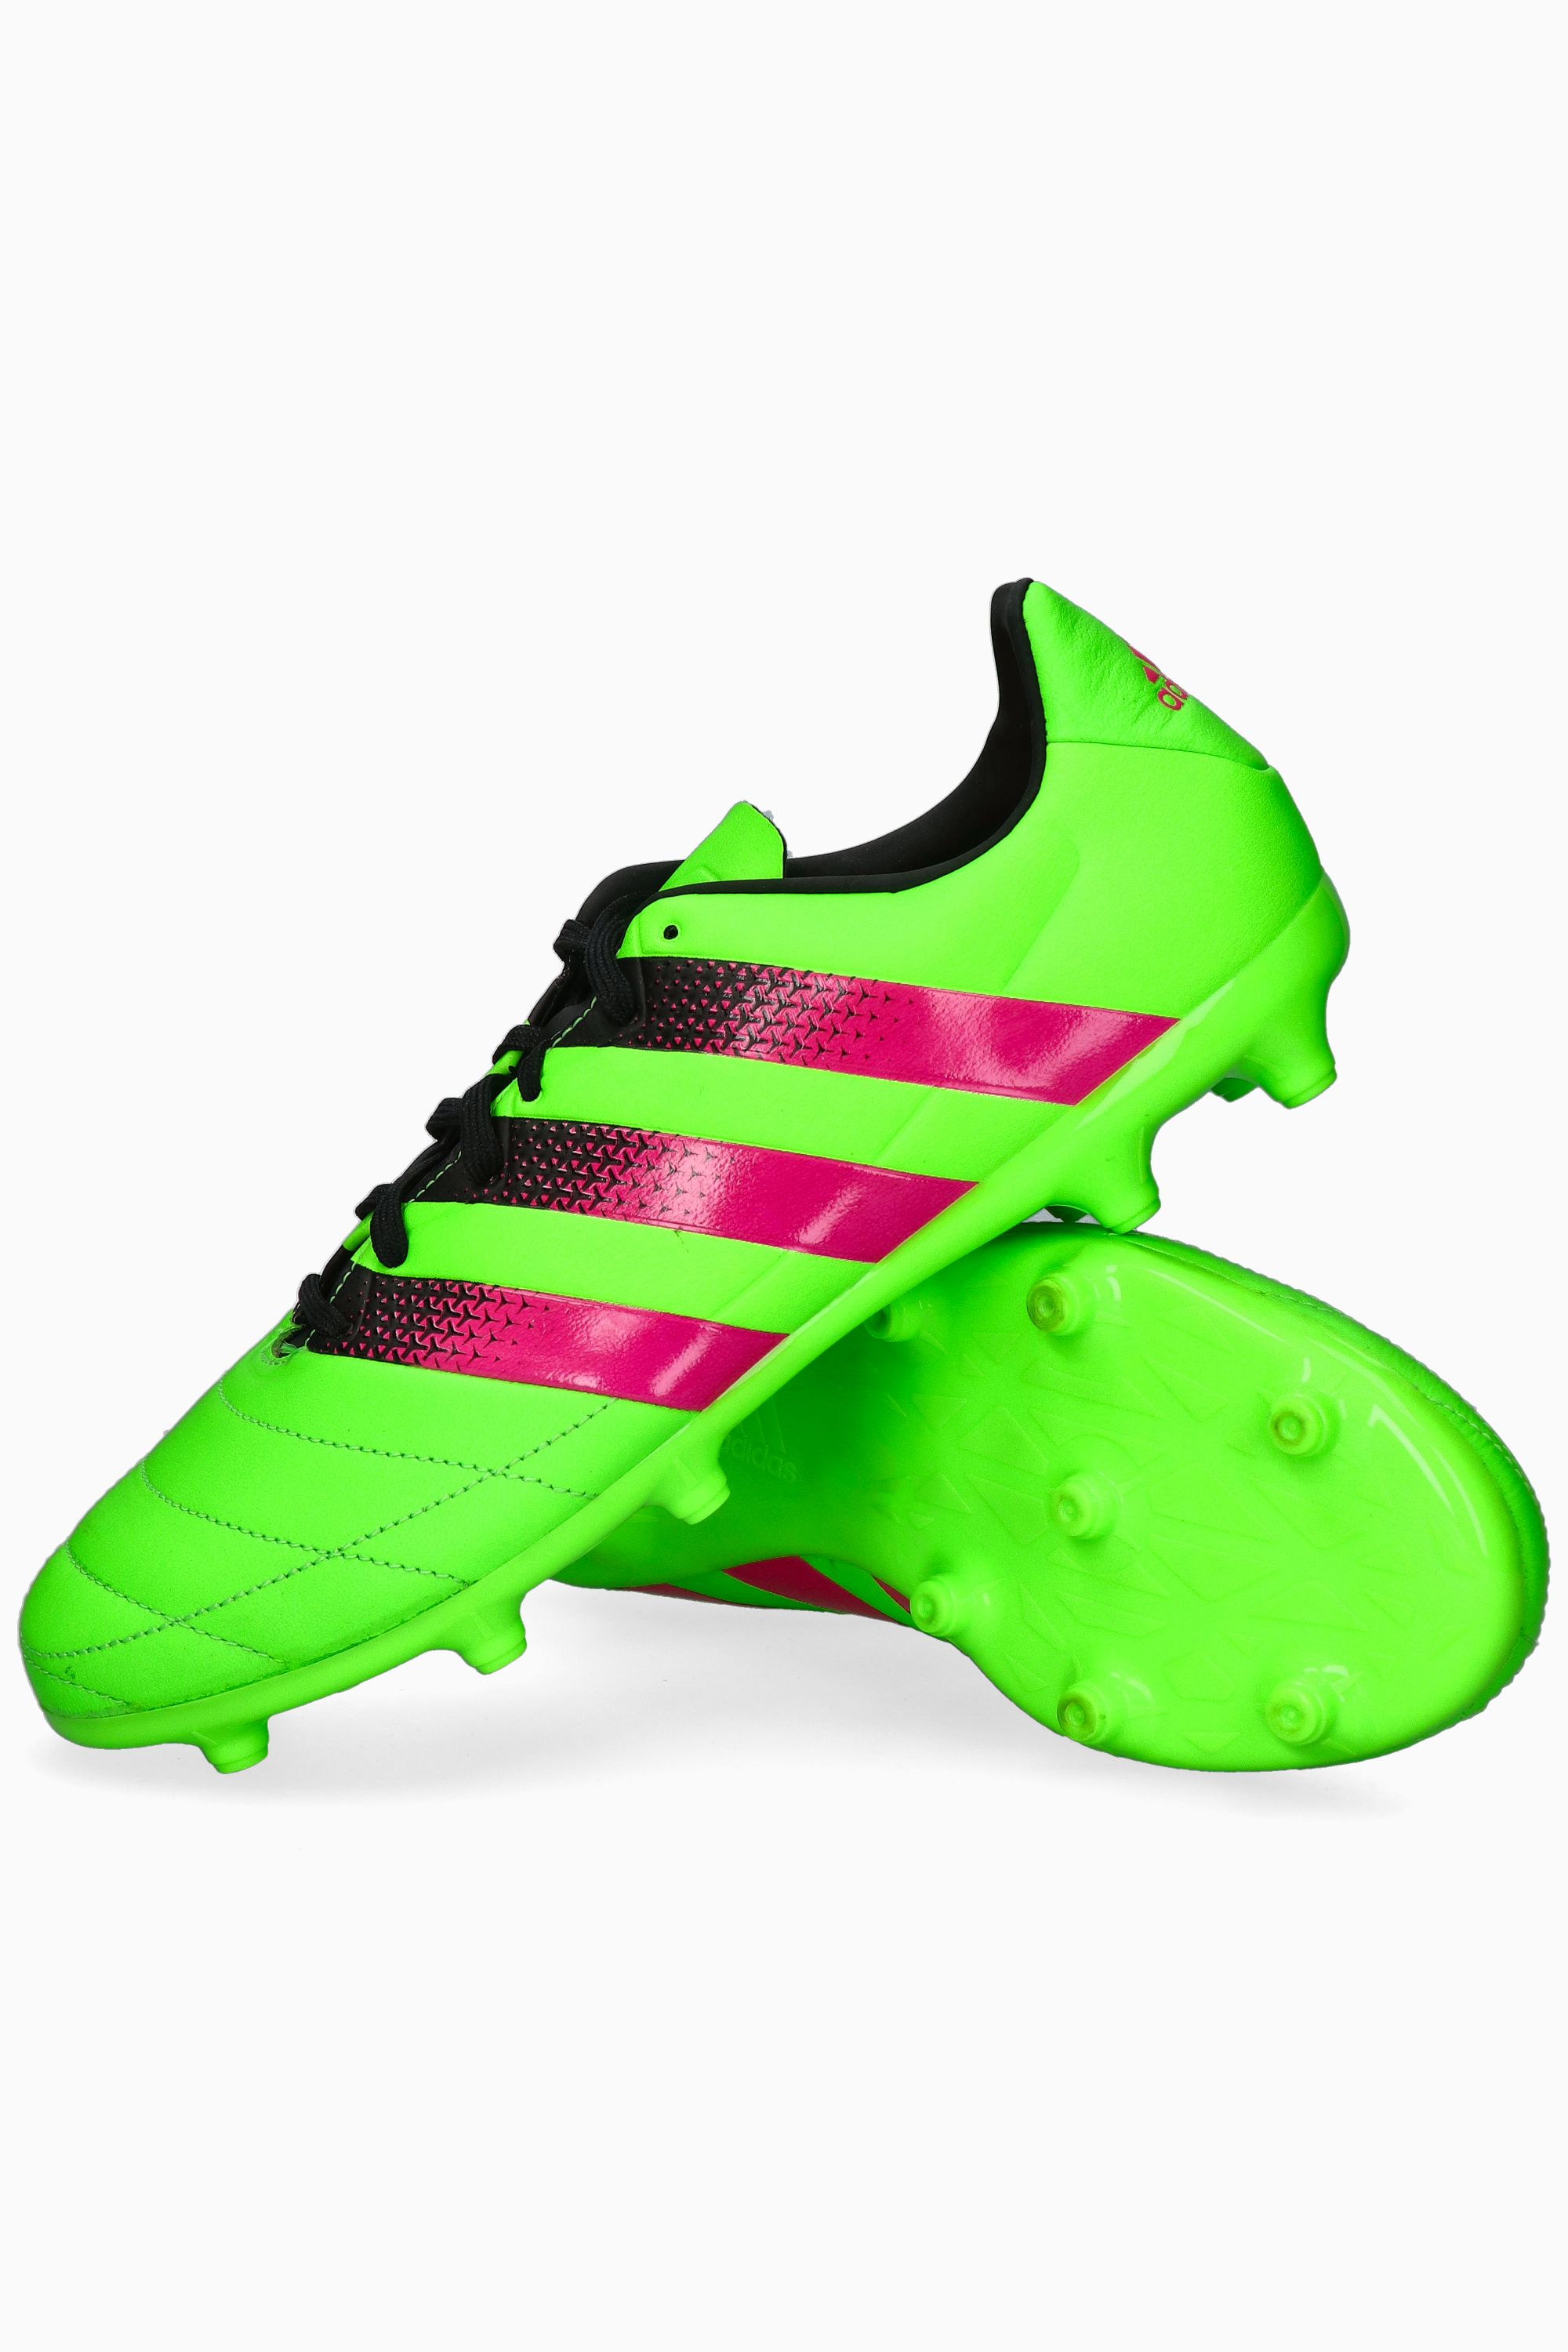 Blij Verduisteren openbaar adidas ACE 16.3 FG Leather | R-GOL.com - Football boots & equipment